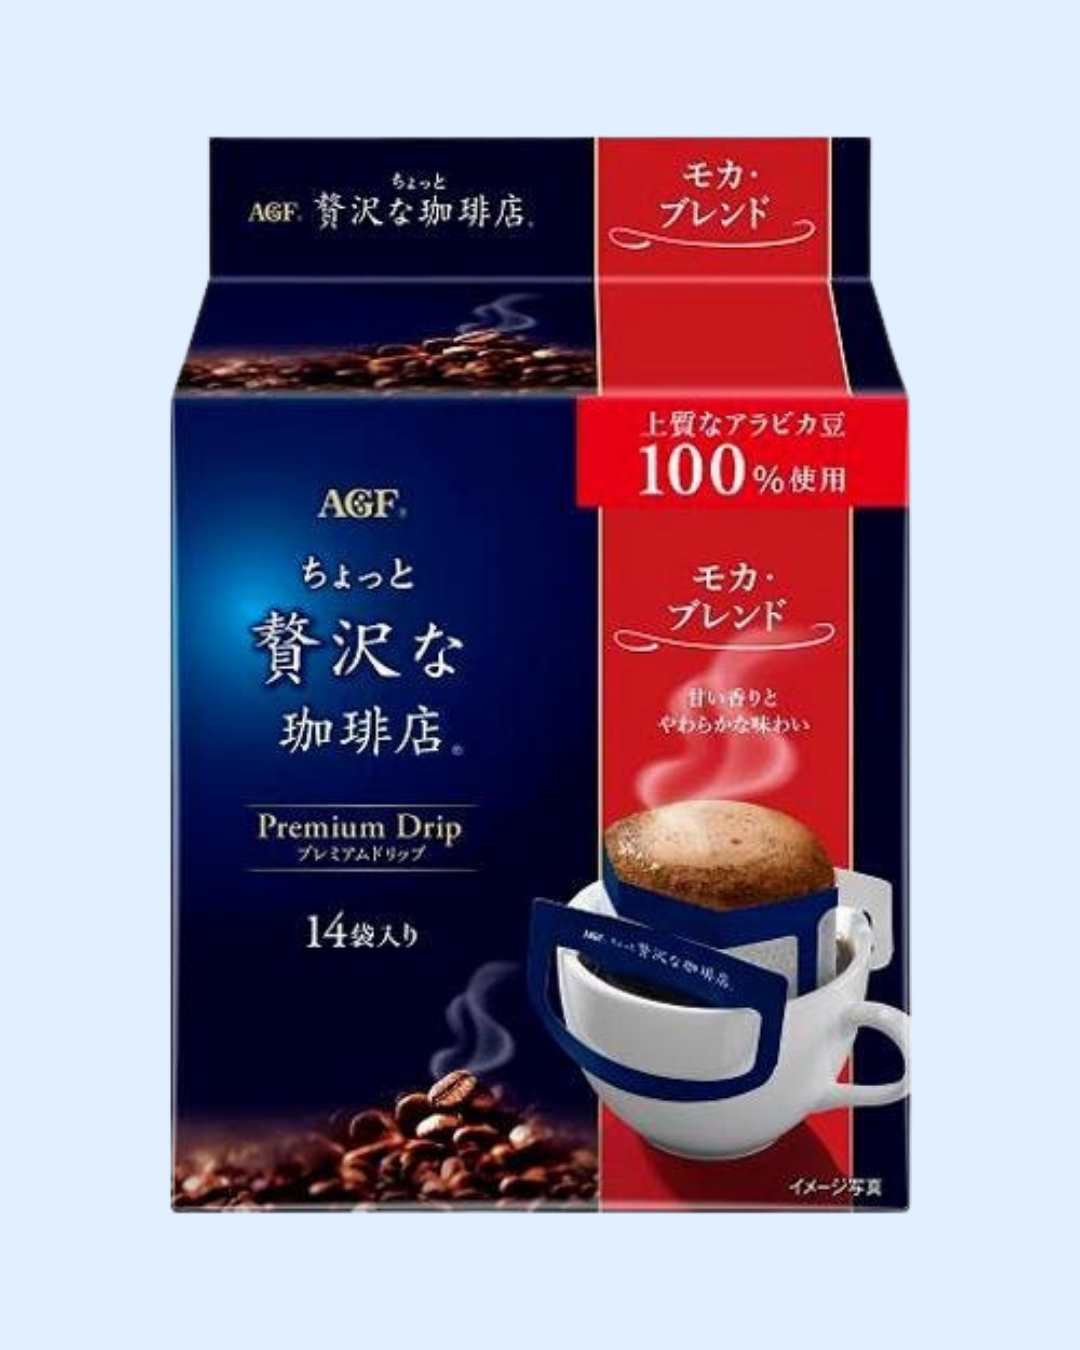 AGF Blendy Premium Drip Coffee